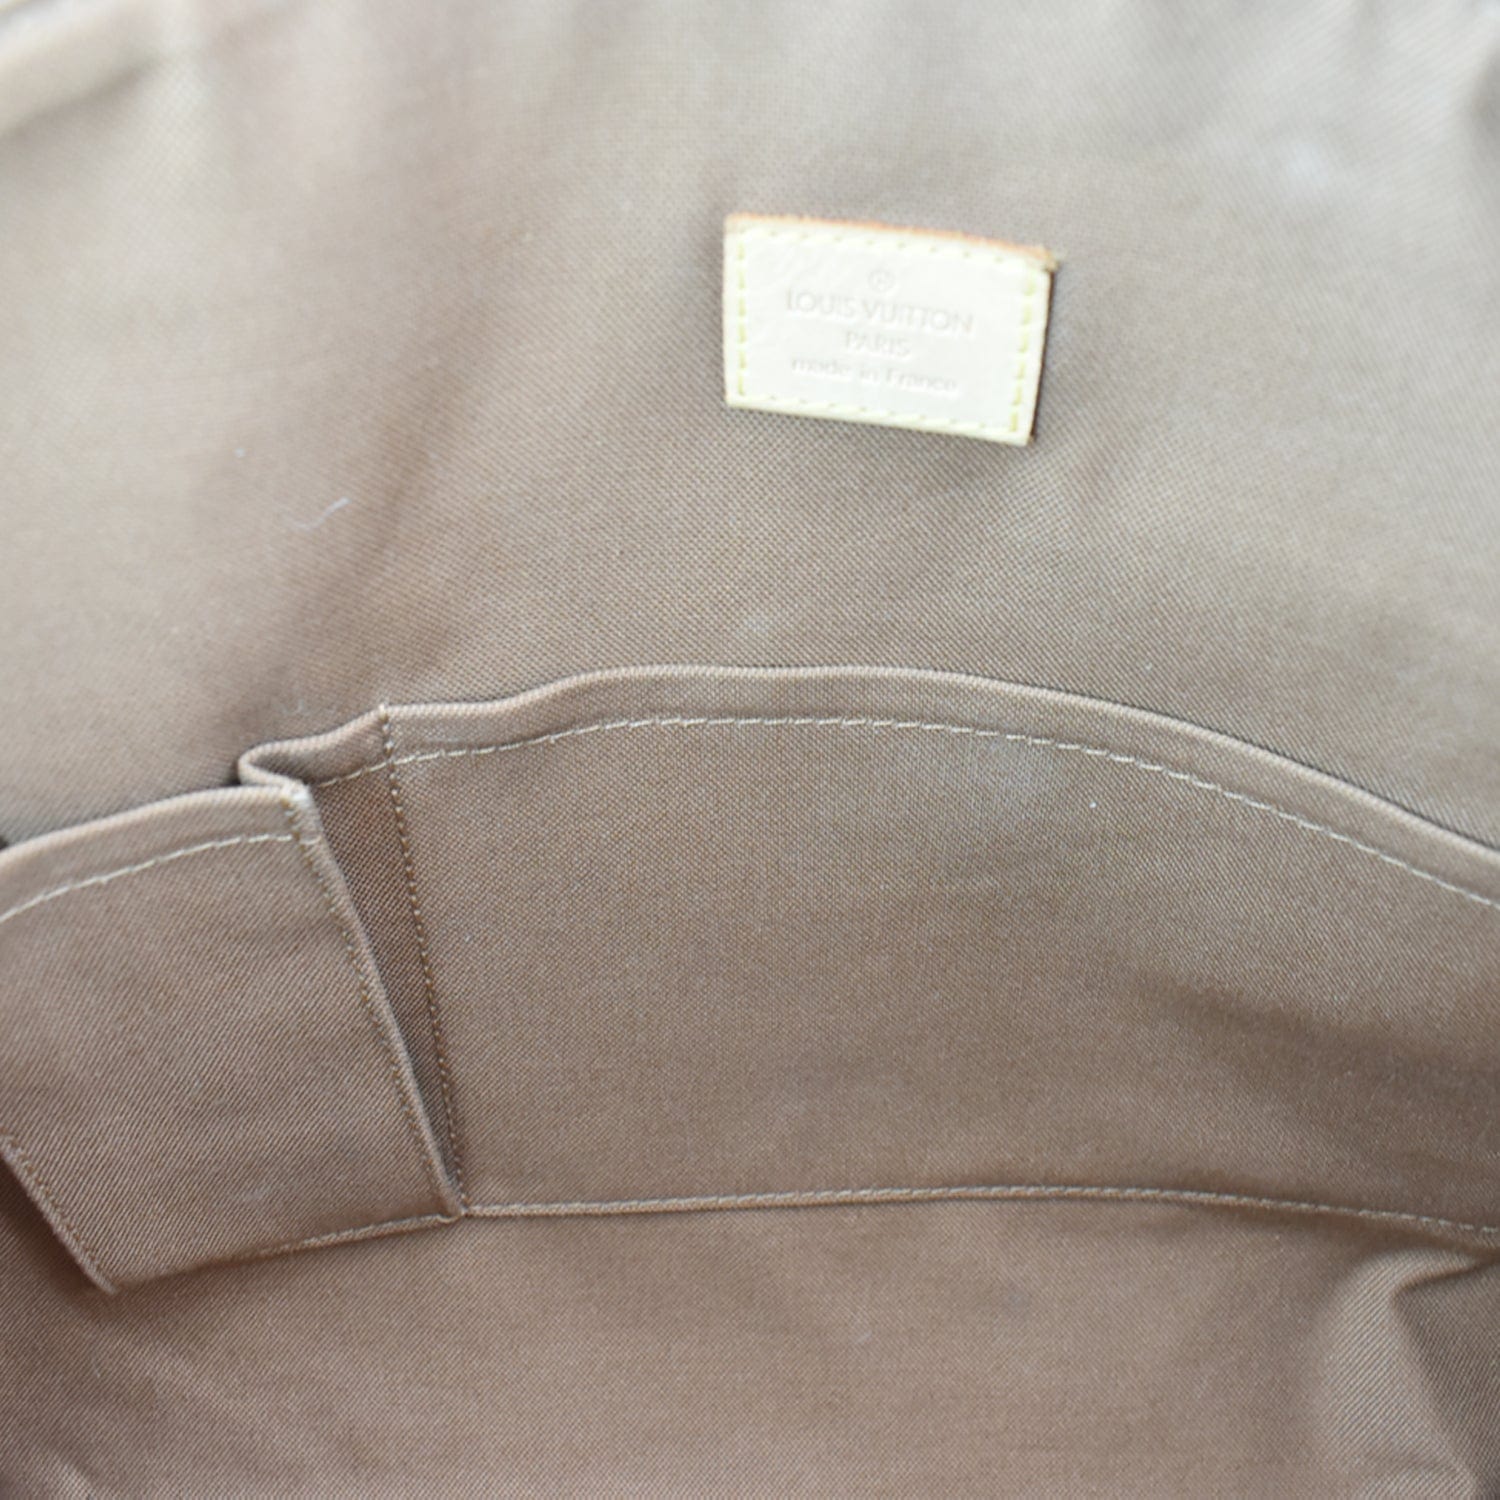 Louis Vuitton Lockit Shoulder bag 370600